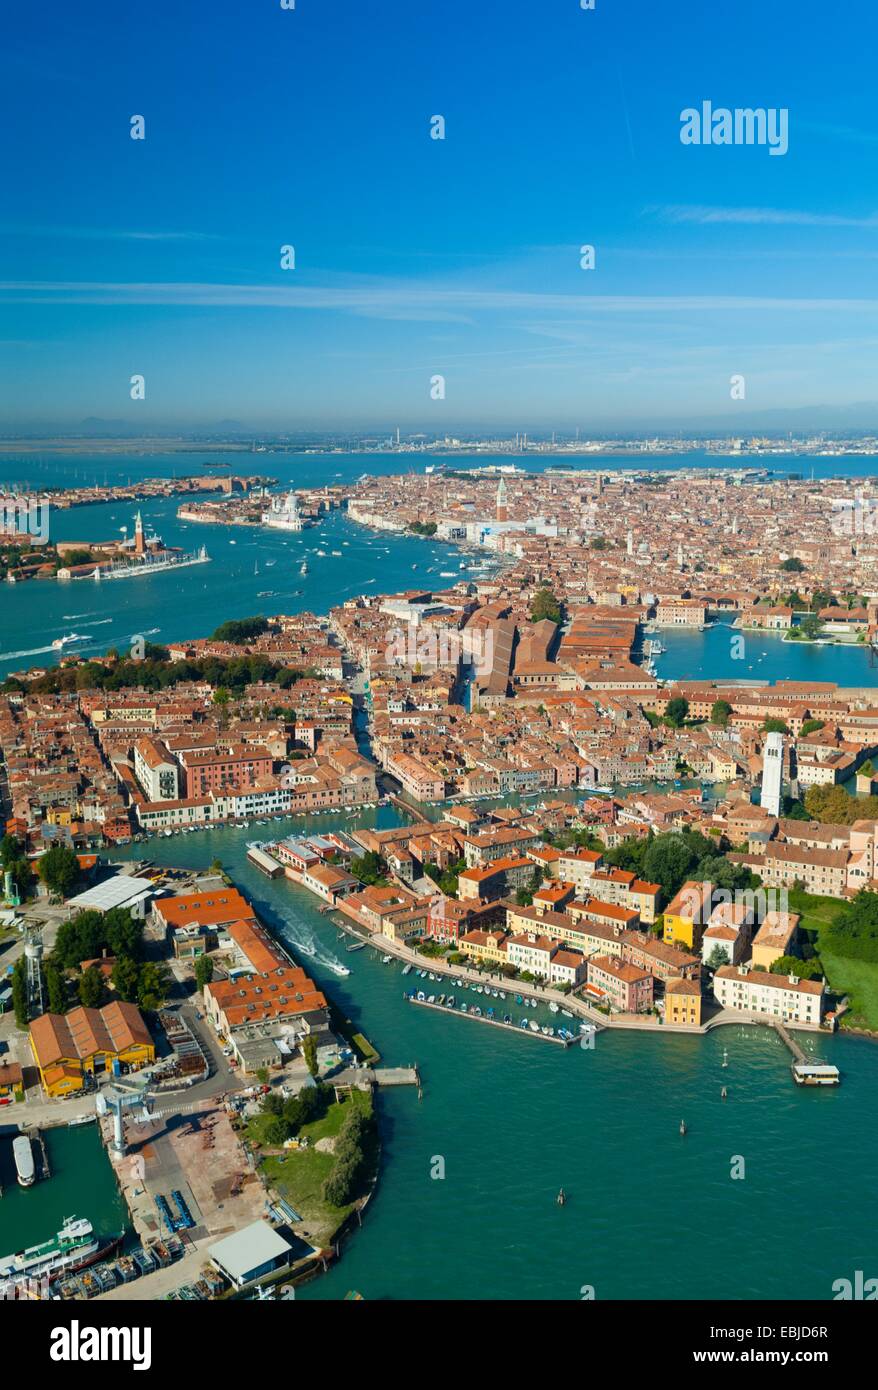 Vue aérienne de Castello, l'Arsenal et du port de l'île de San Pietro di Castello, Venise, Italie, Europe Banque D'Images